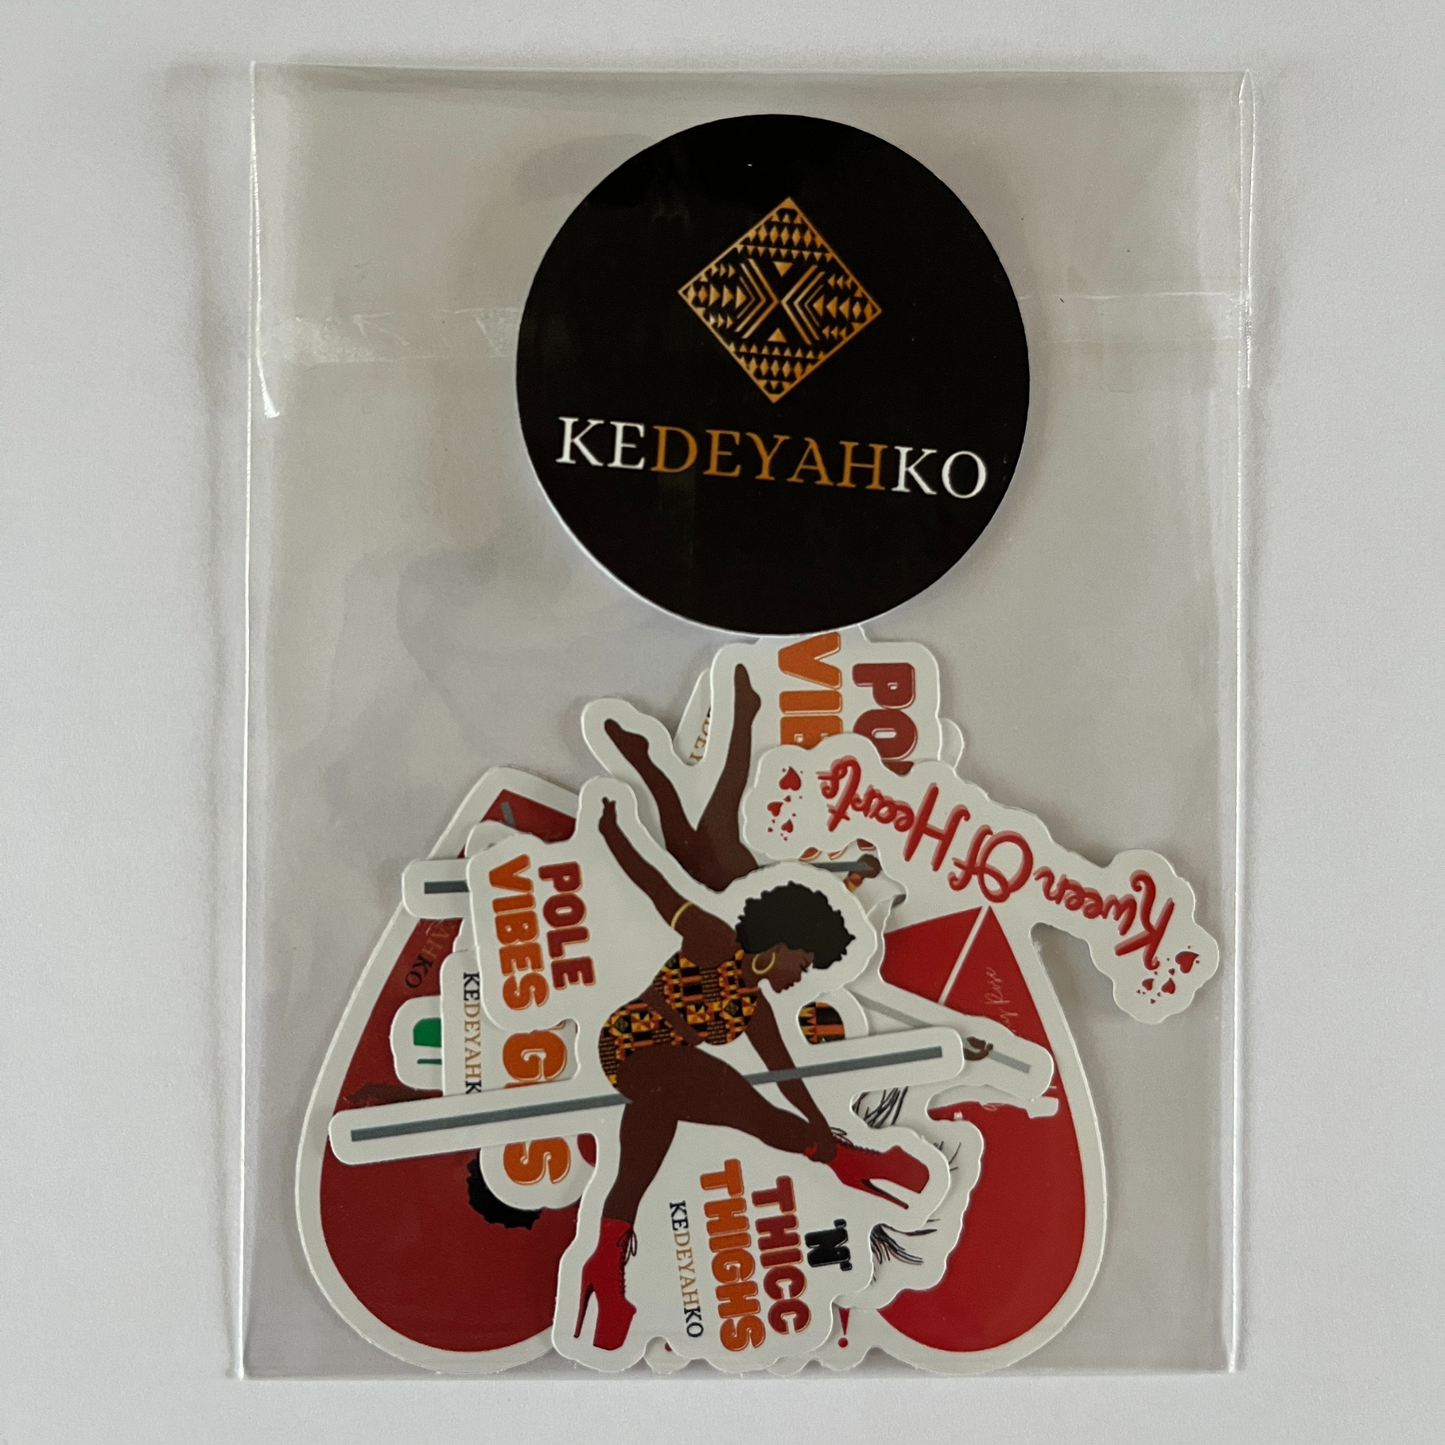 Kedeyahko Kweens Stickers Pack of 5